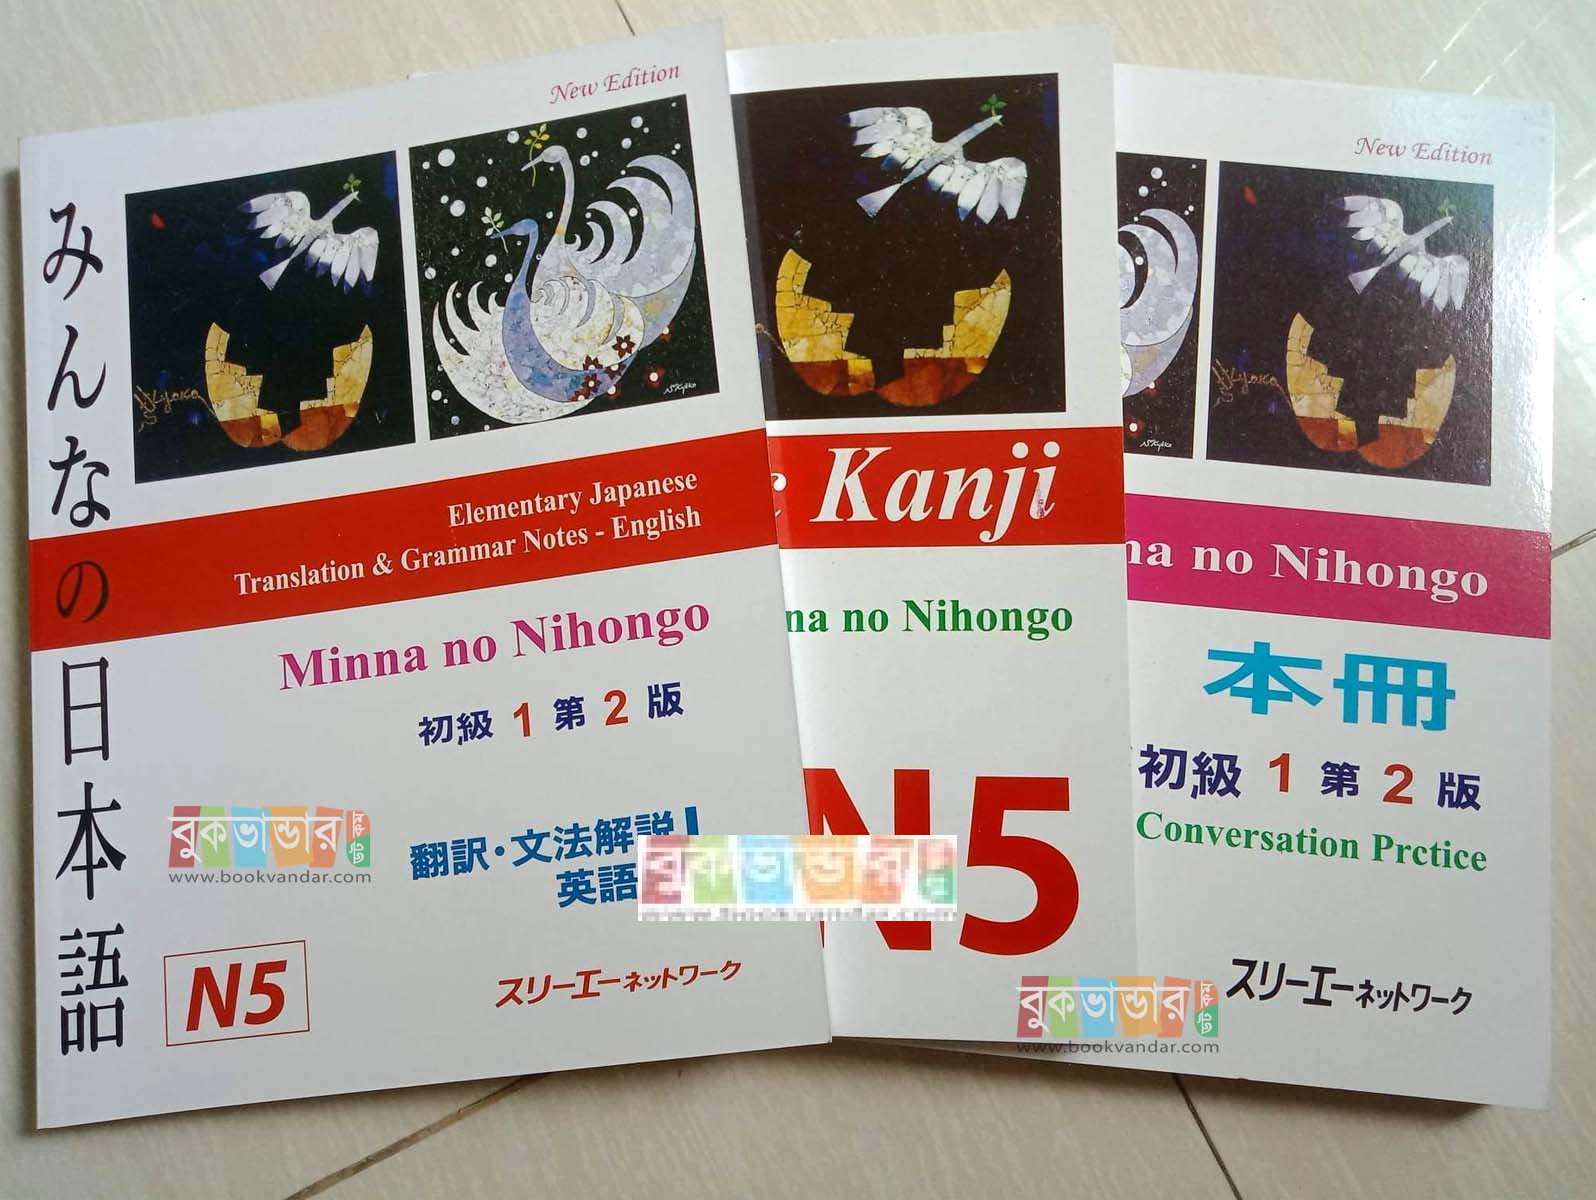 N5 - Japanse to English Language